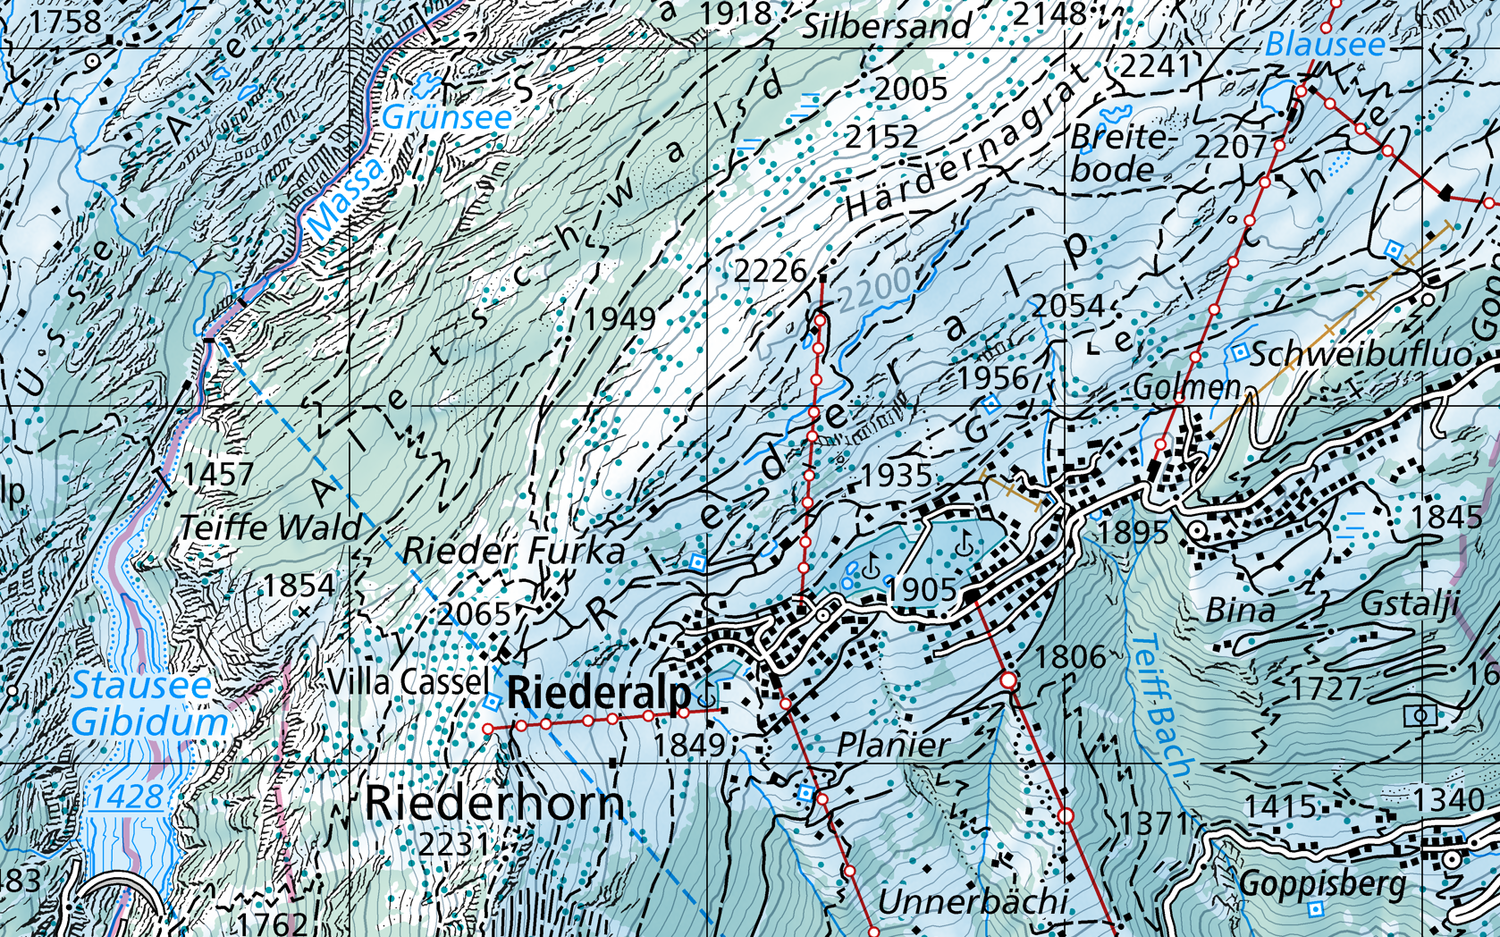 Das Bild zeigt einen Kartenausschnitt von der Riederalp und Umgebung in winterlicher Farbgebung.